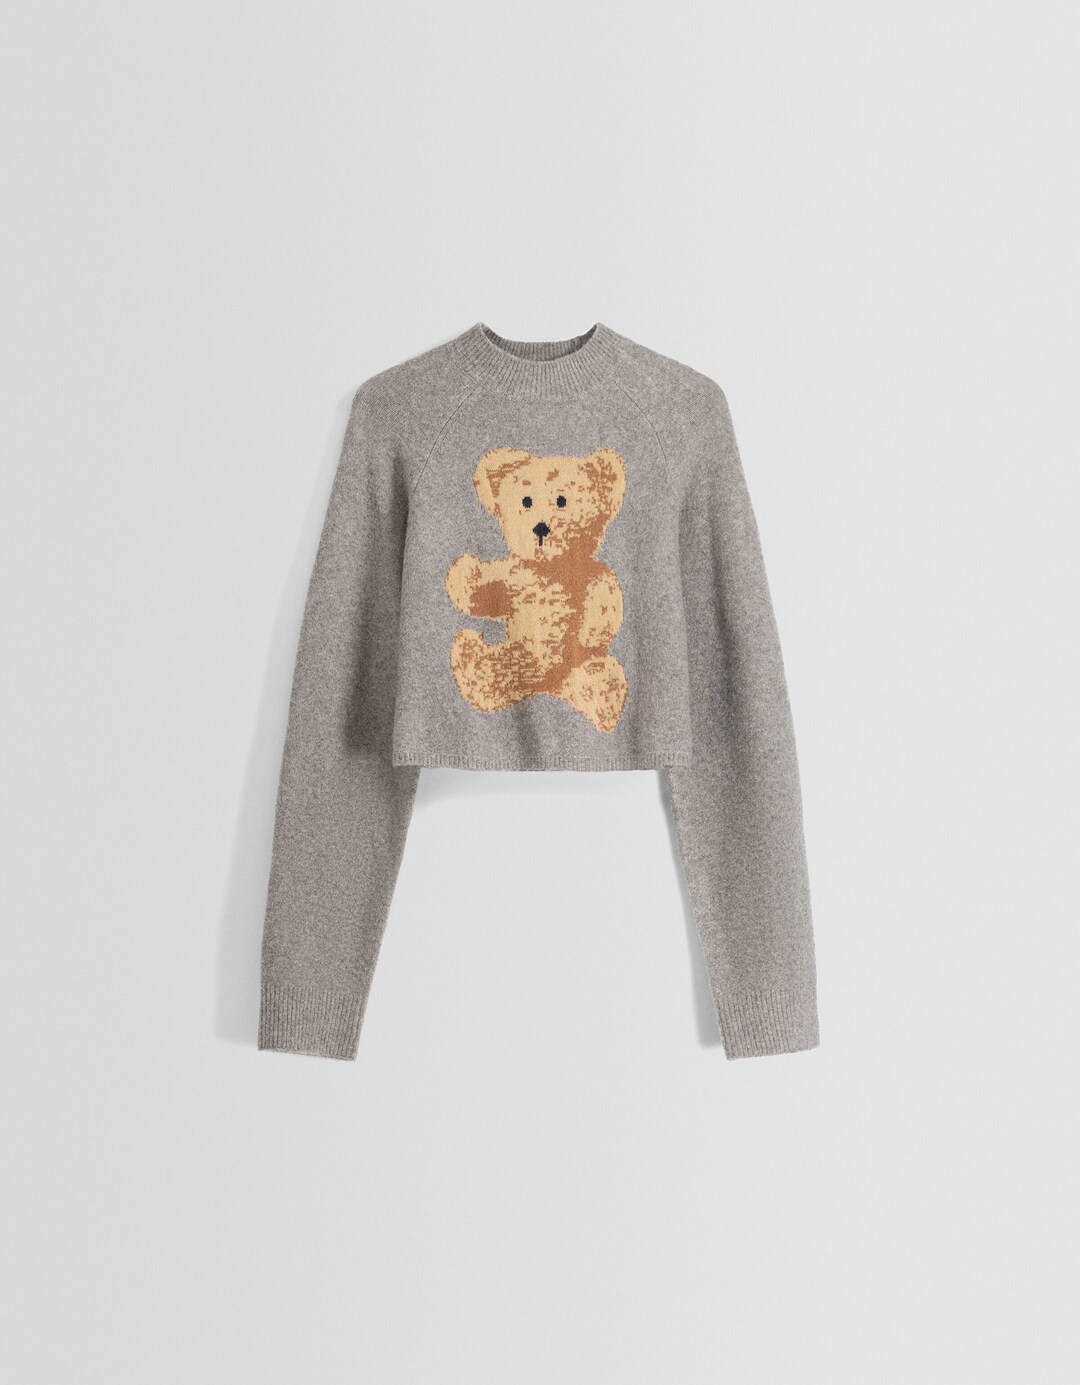 Pullover mit Bären